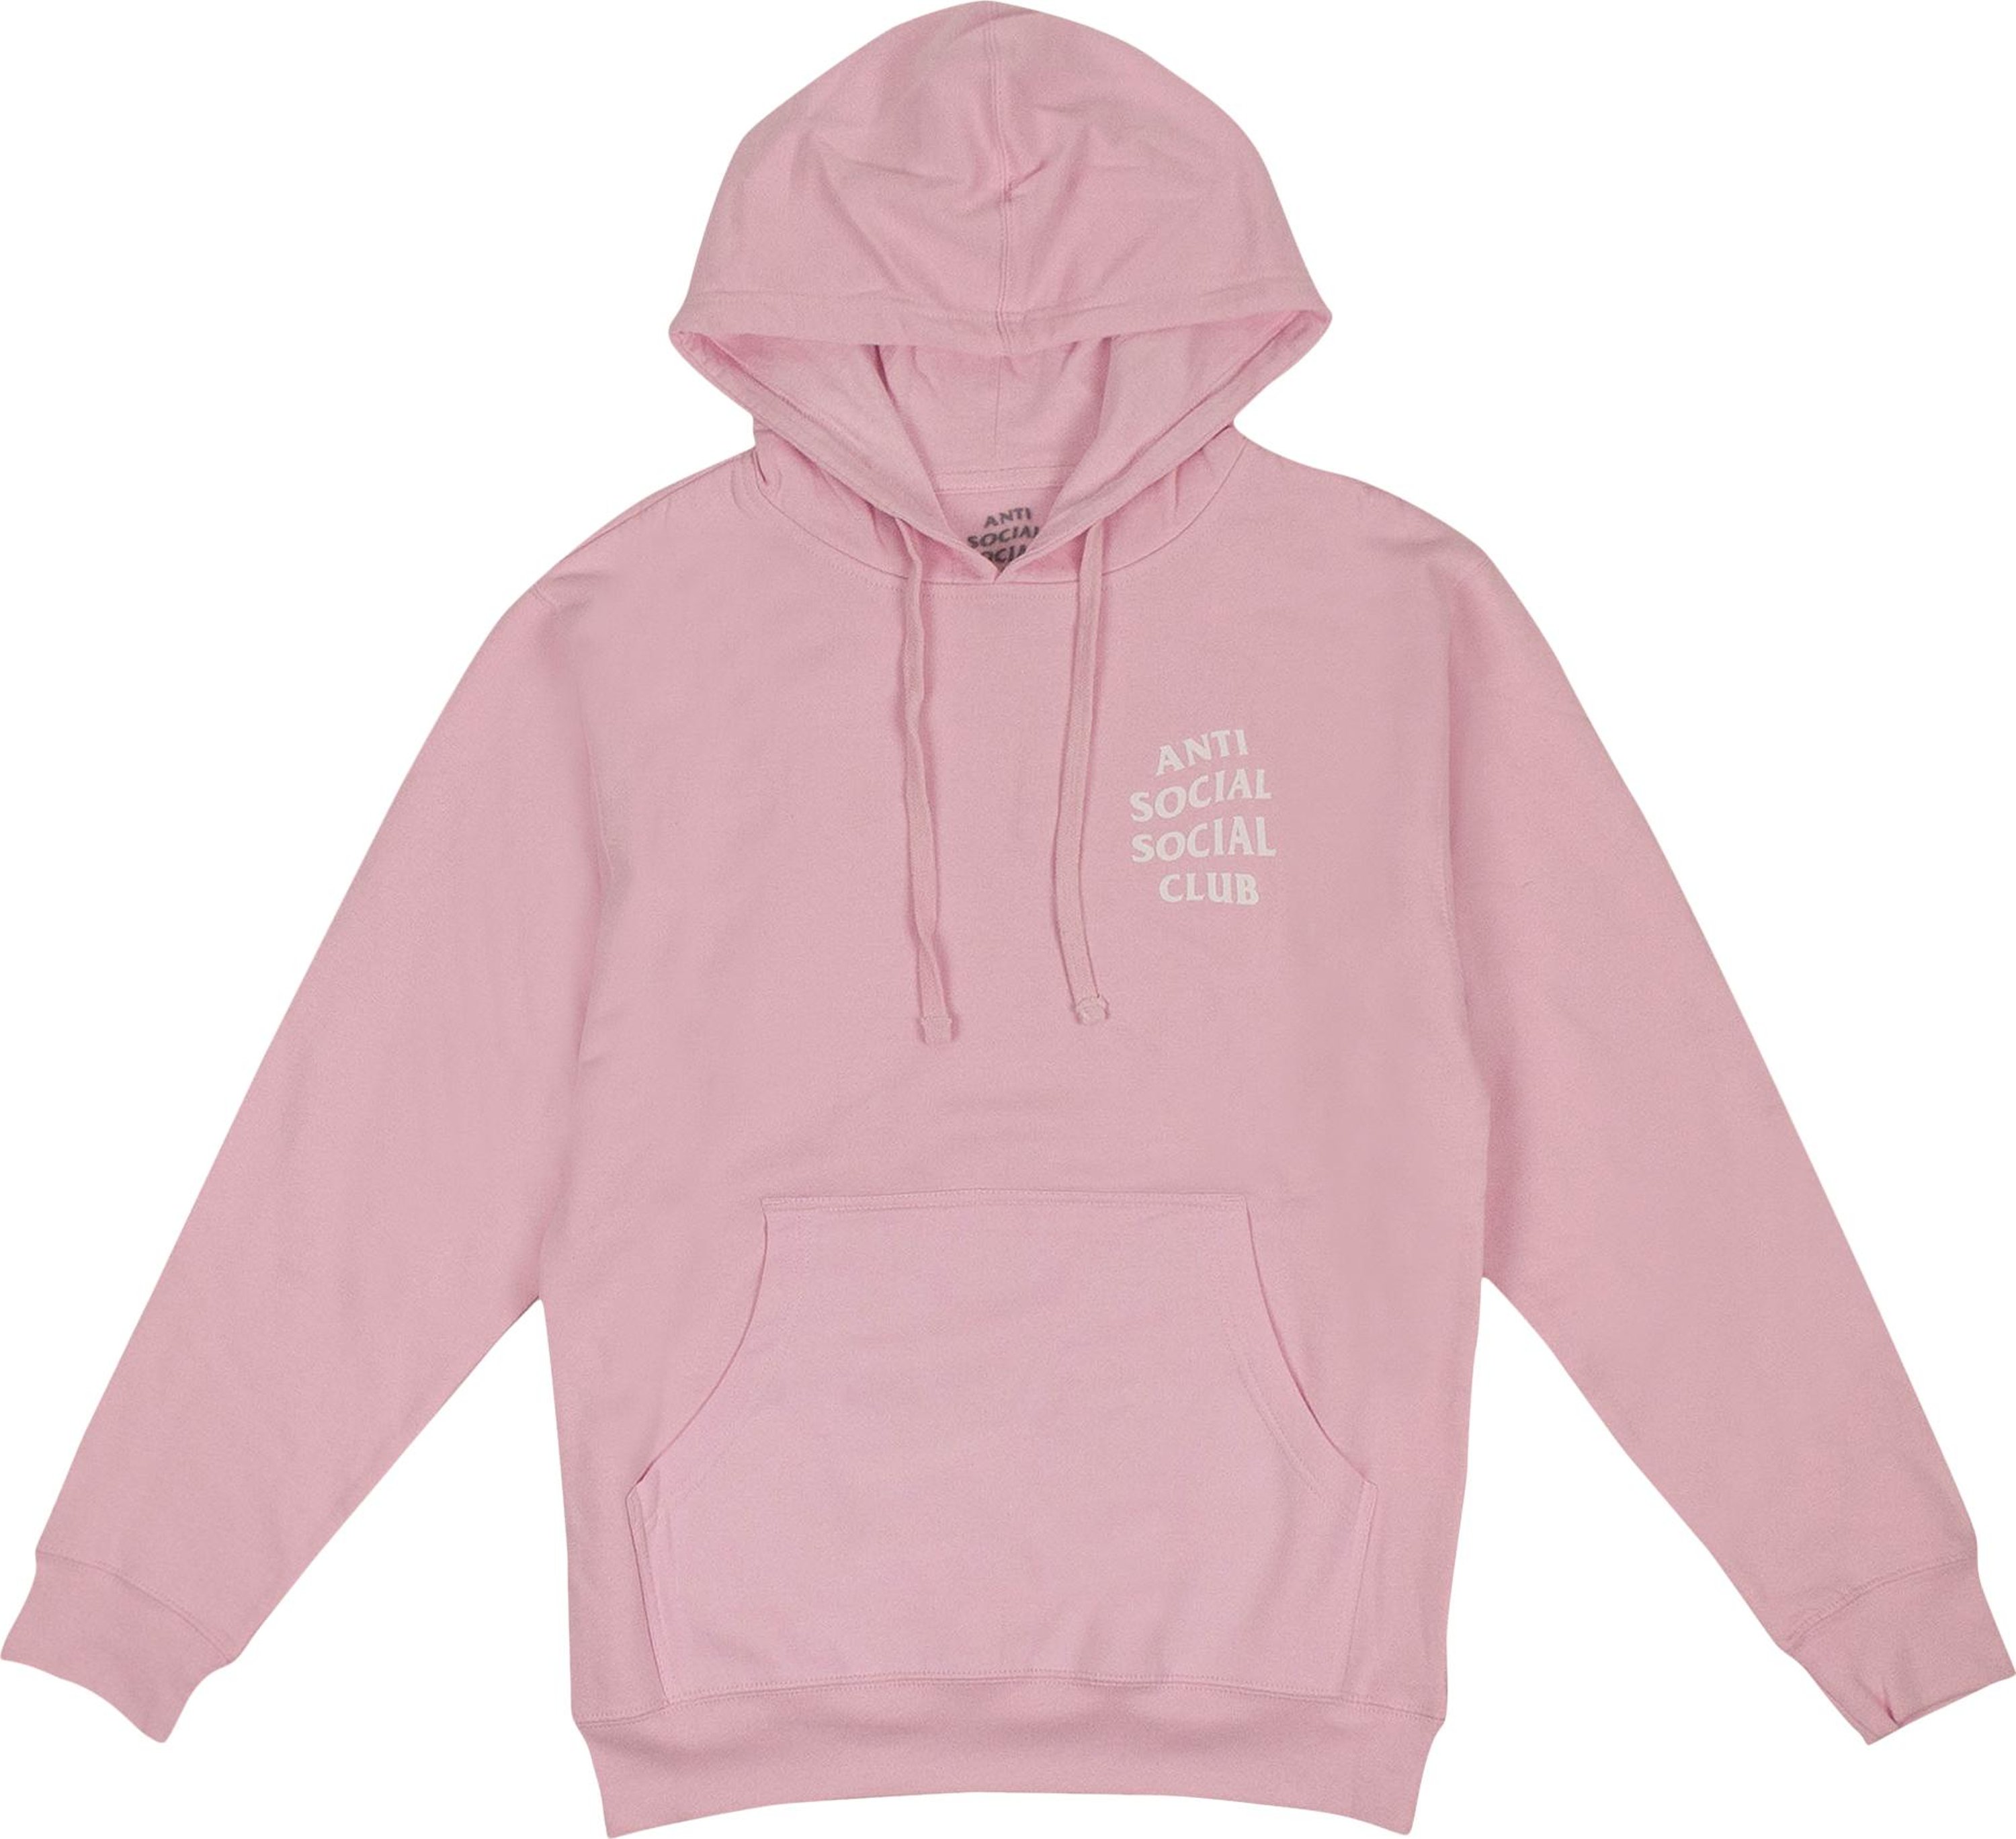 Buy Anti Social Social Club Cherry Blossom Hooded Sweatshirt 'Pink ...